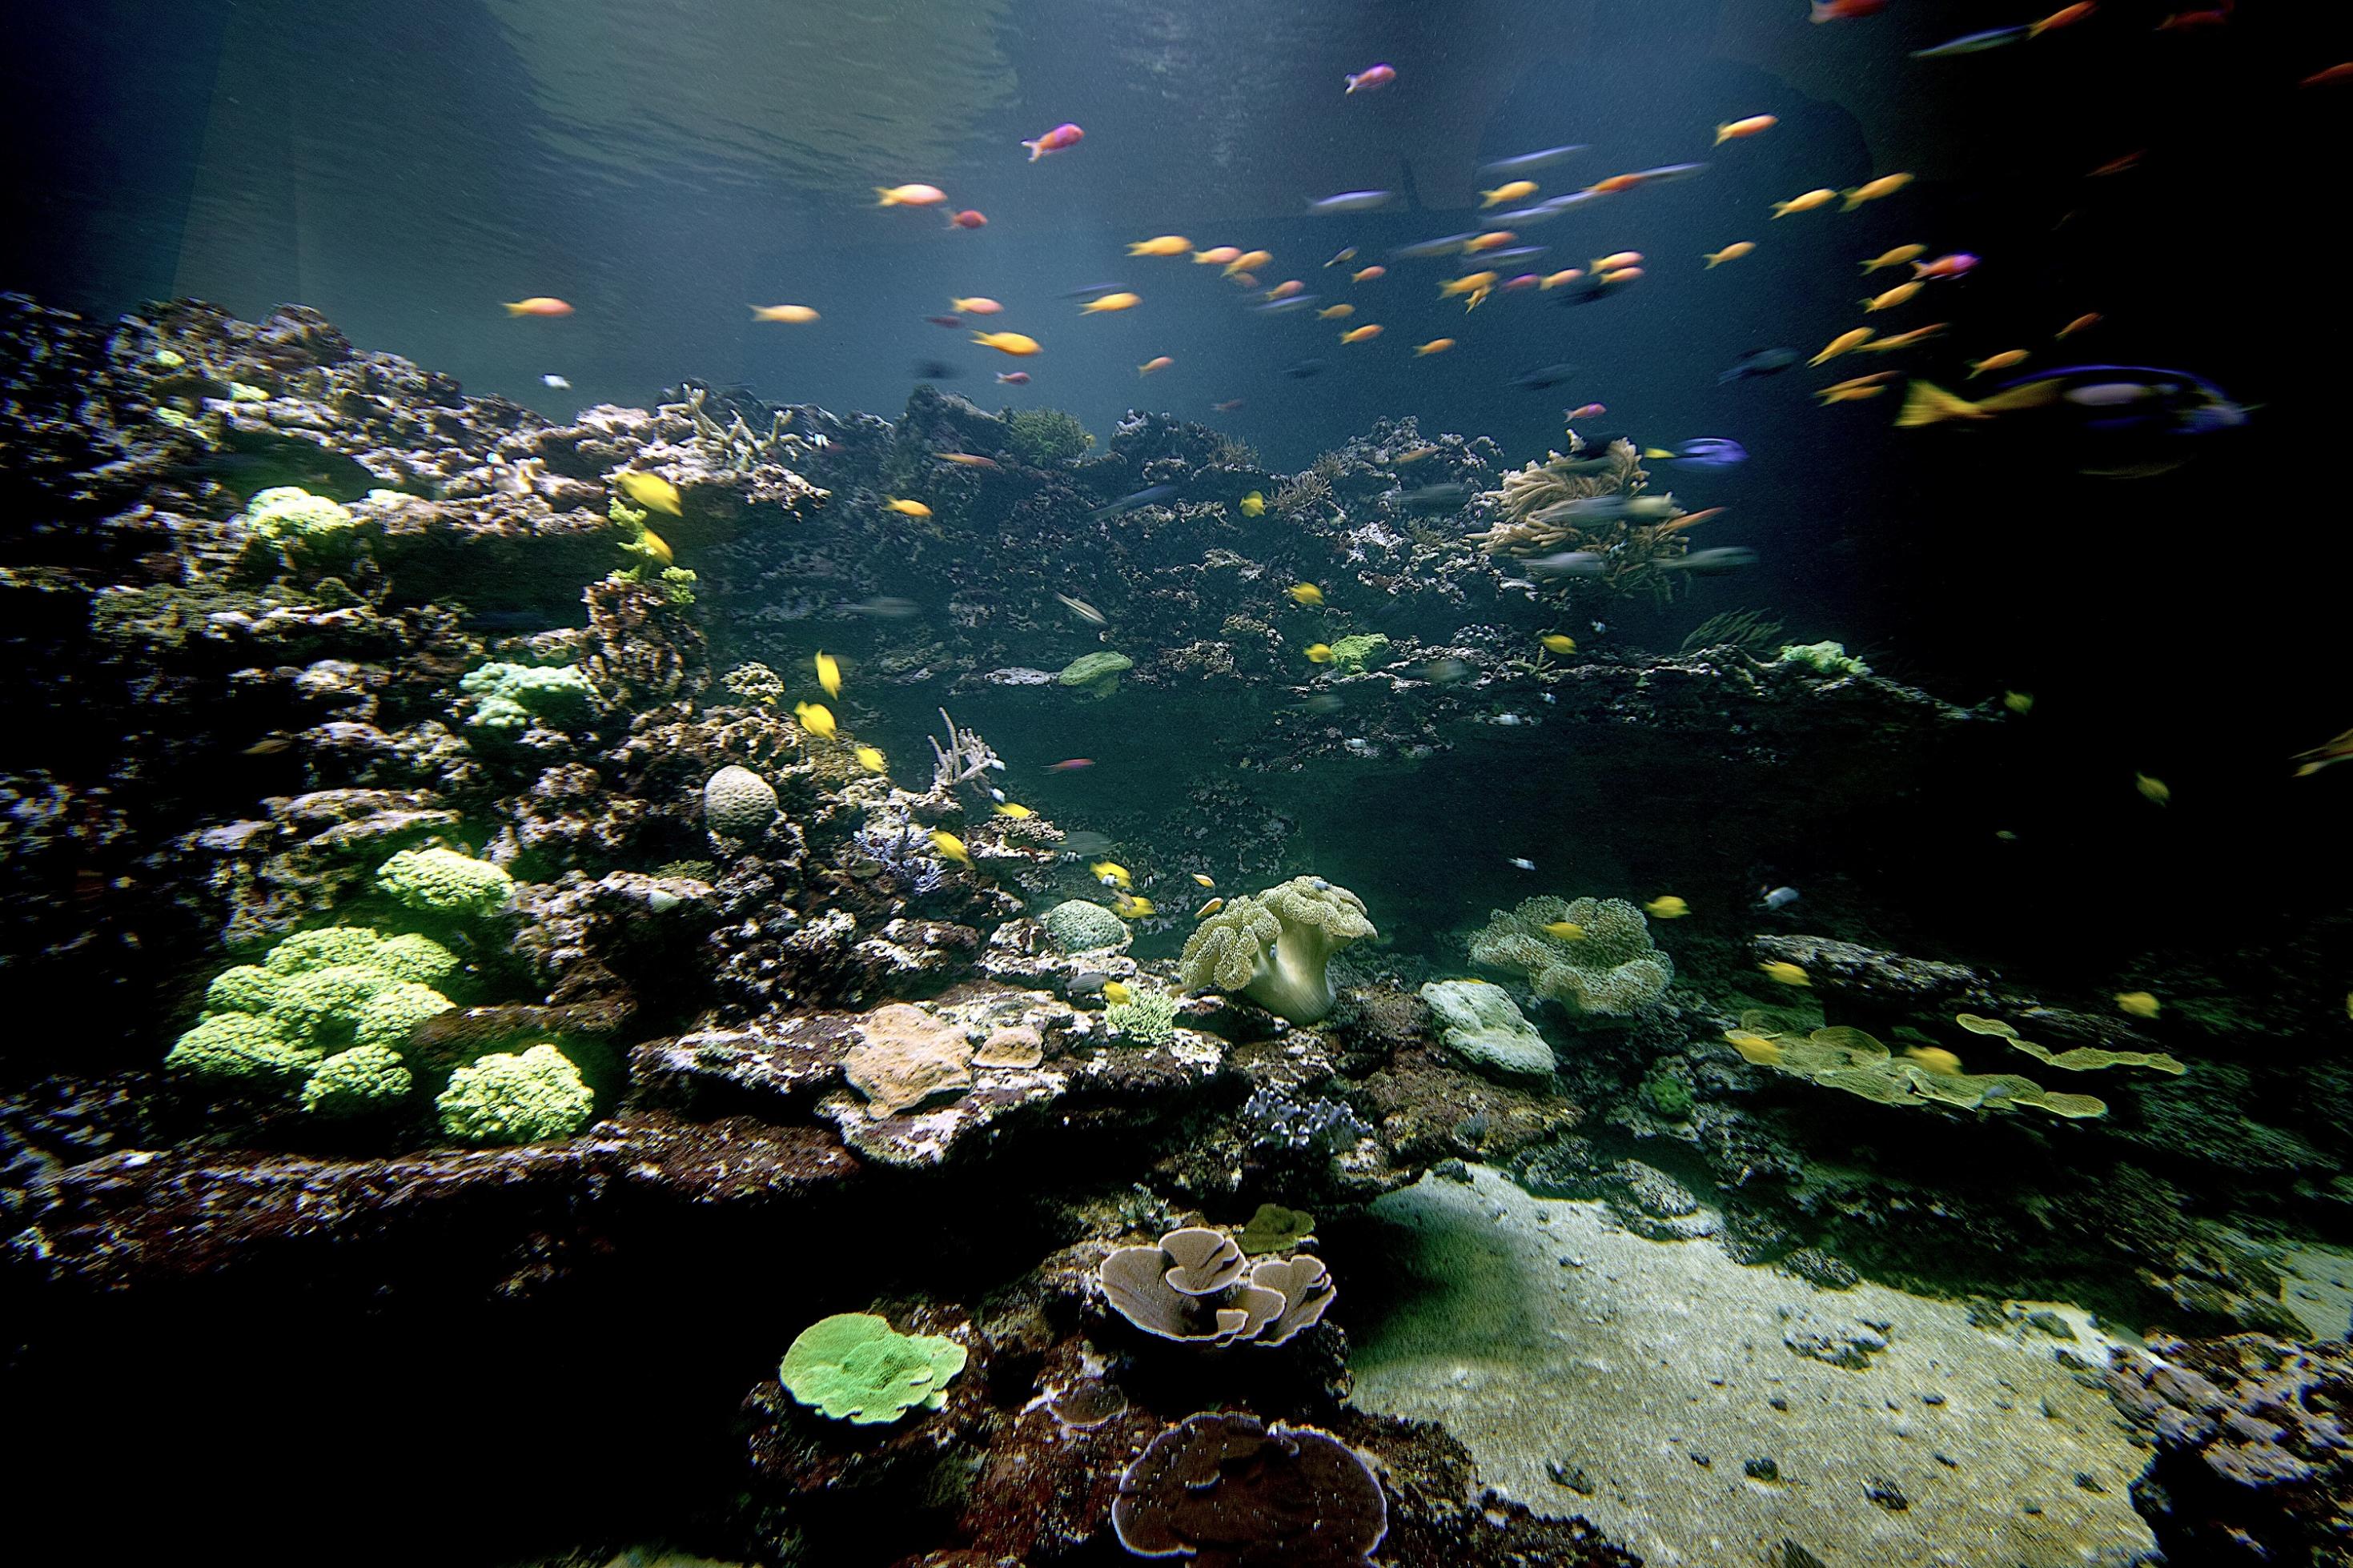 Blick in das Meerwasser-Aquarium des Naturkundemuseums Karlsruhe. Buntfarbige Korallen und tropische Fische in einer Unterwasser-Landschaft.